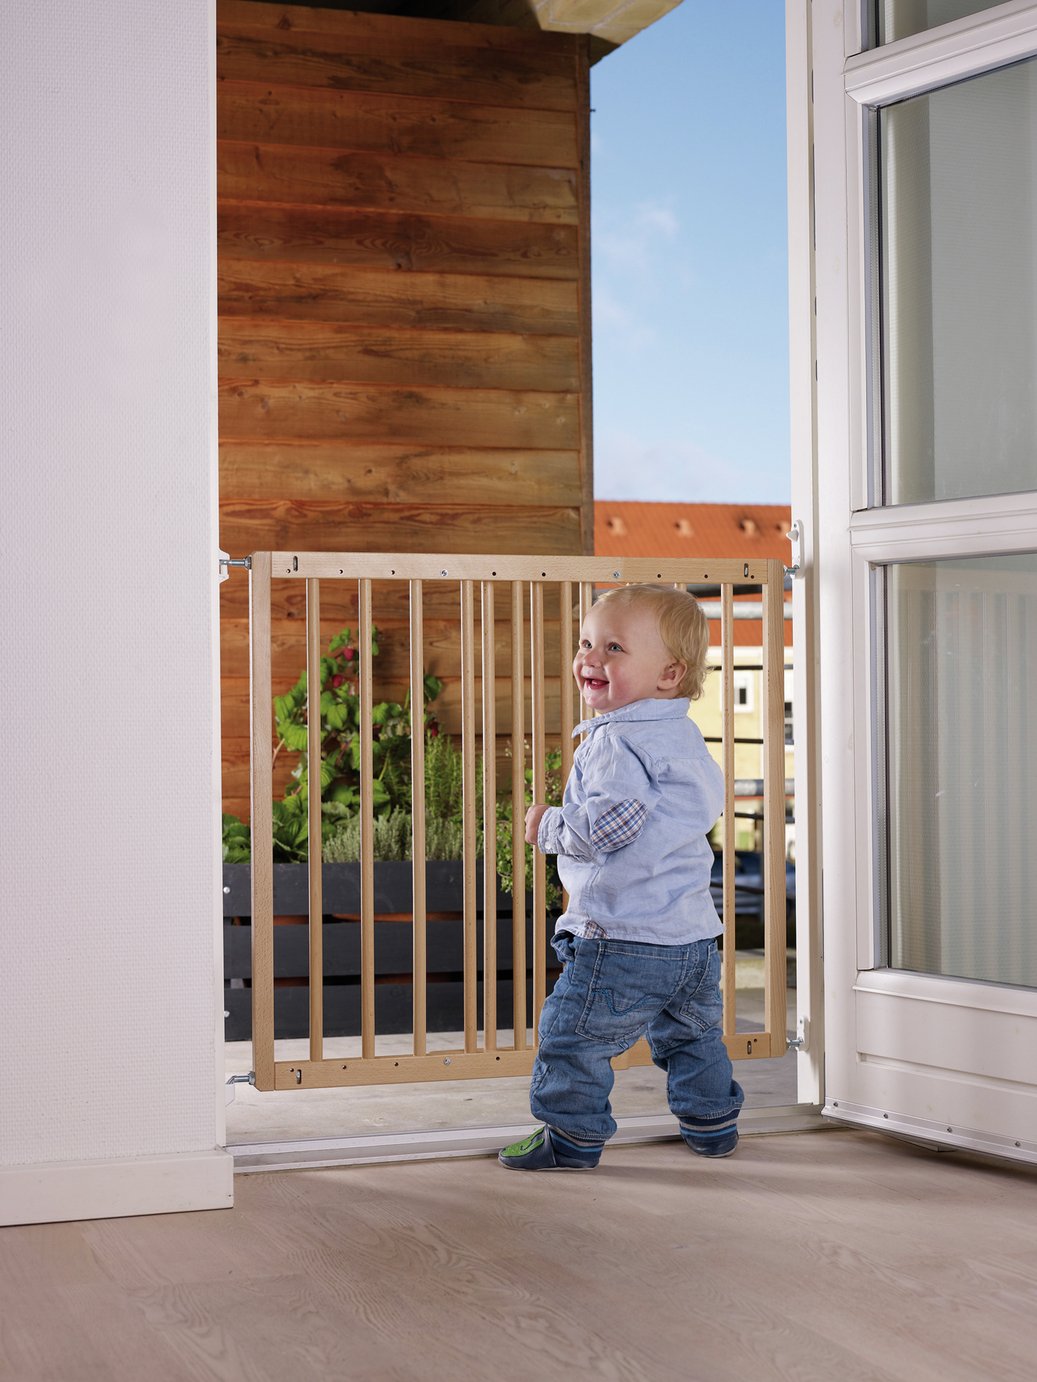 BabyDan Multidan Wooden Extending Safety Gate Review